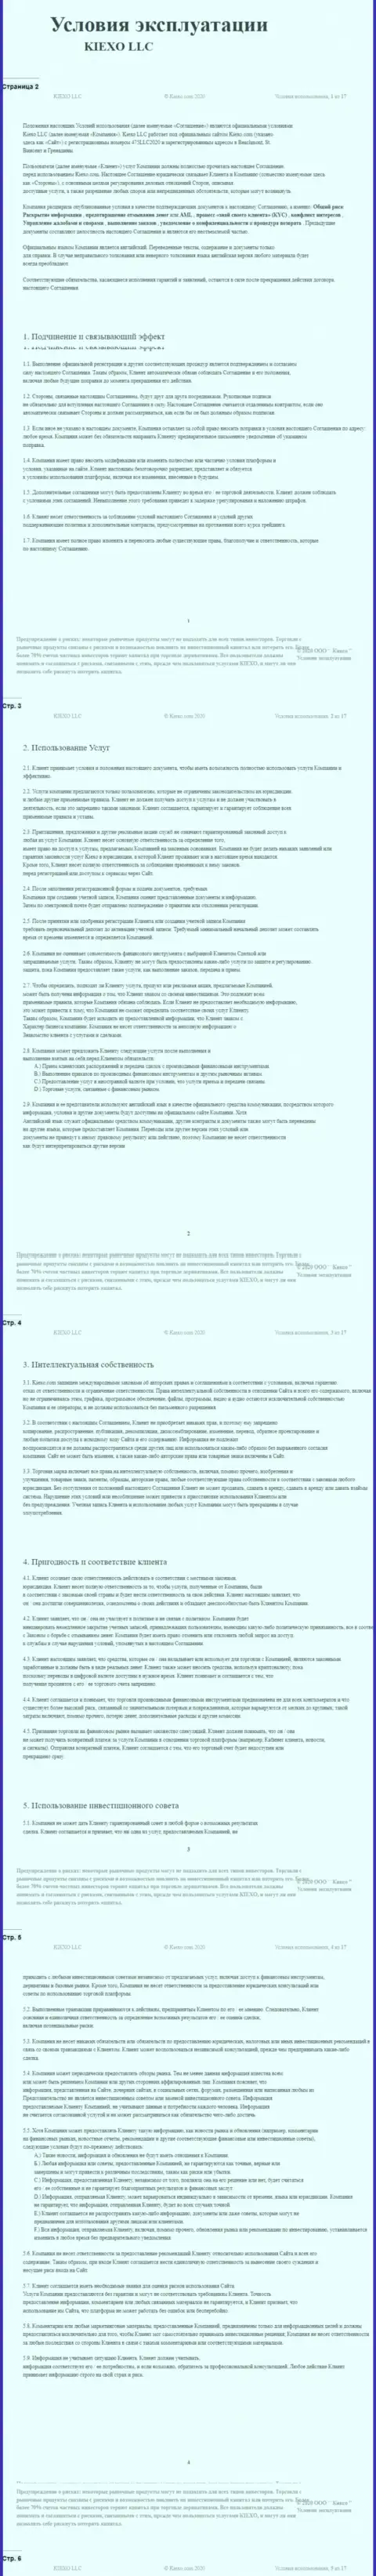 Пользовательское соглашение Forex дилингового центра Киексо Ком (часть первая)